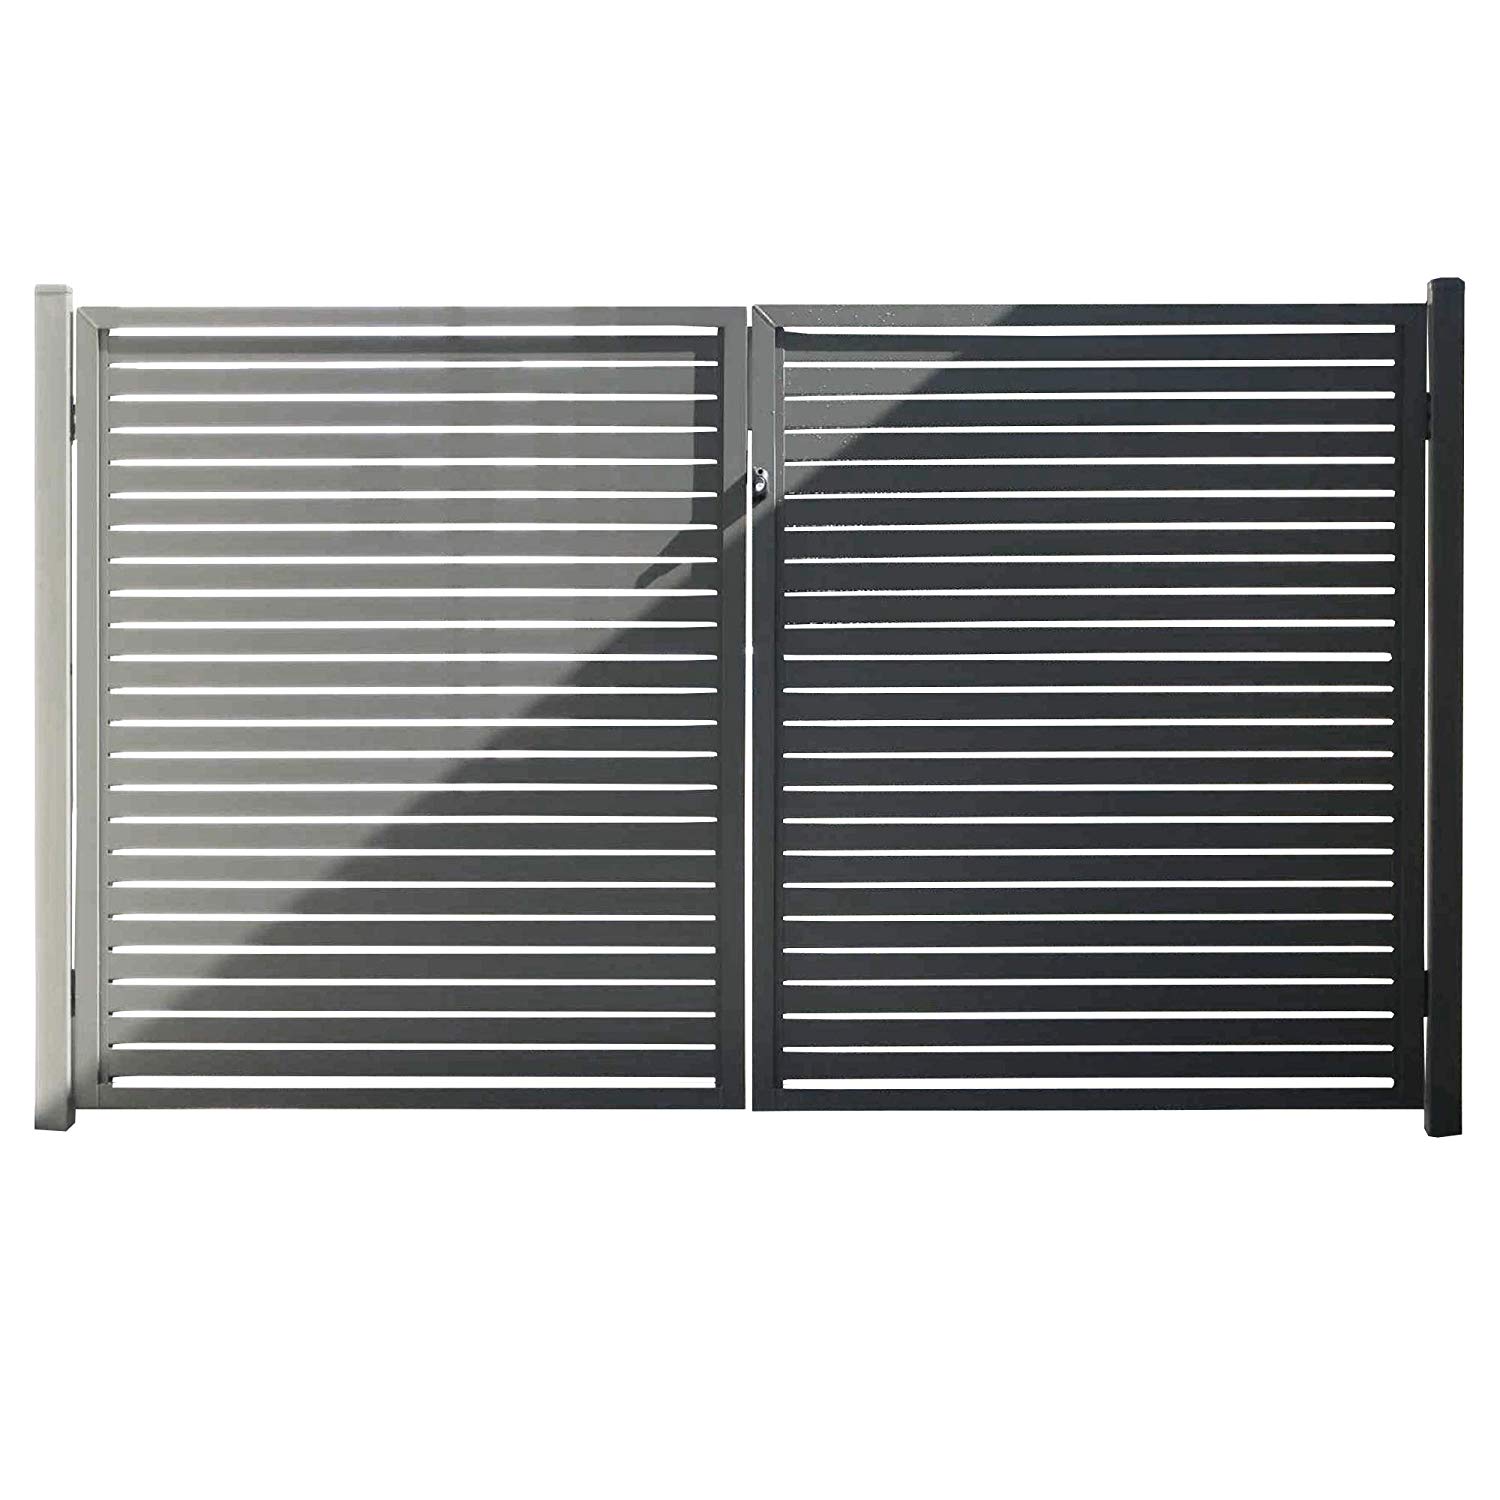 Stratco Aluminum Slat Fence Gate